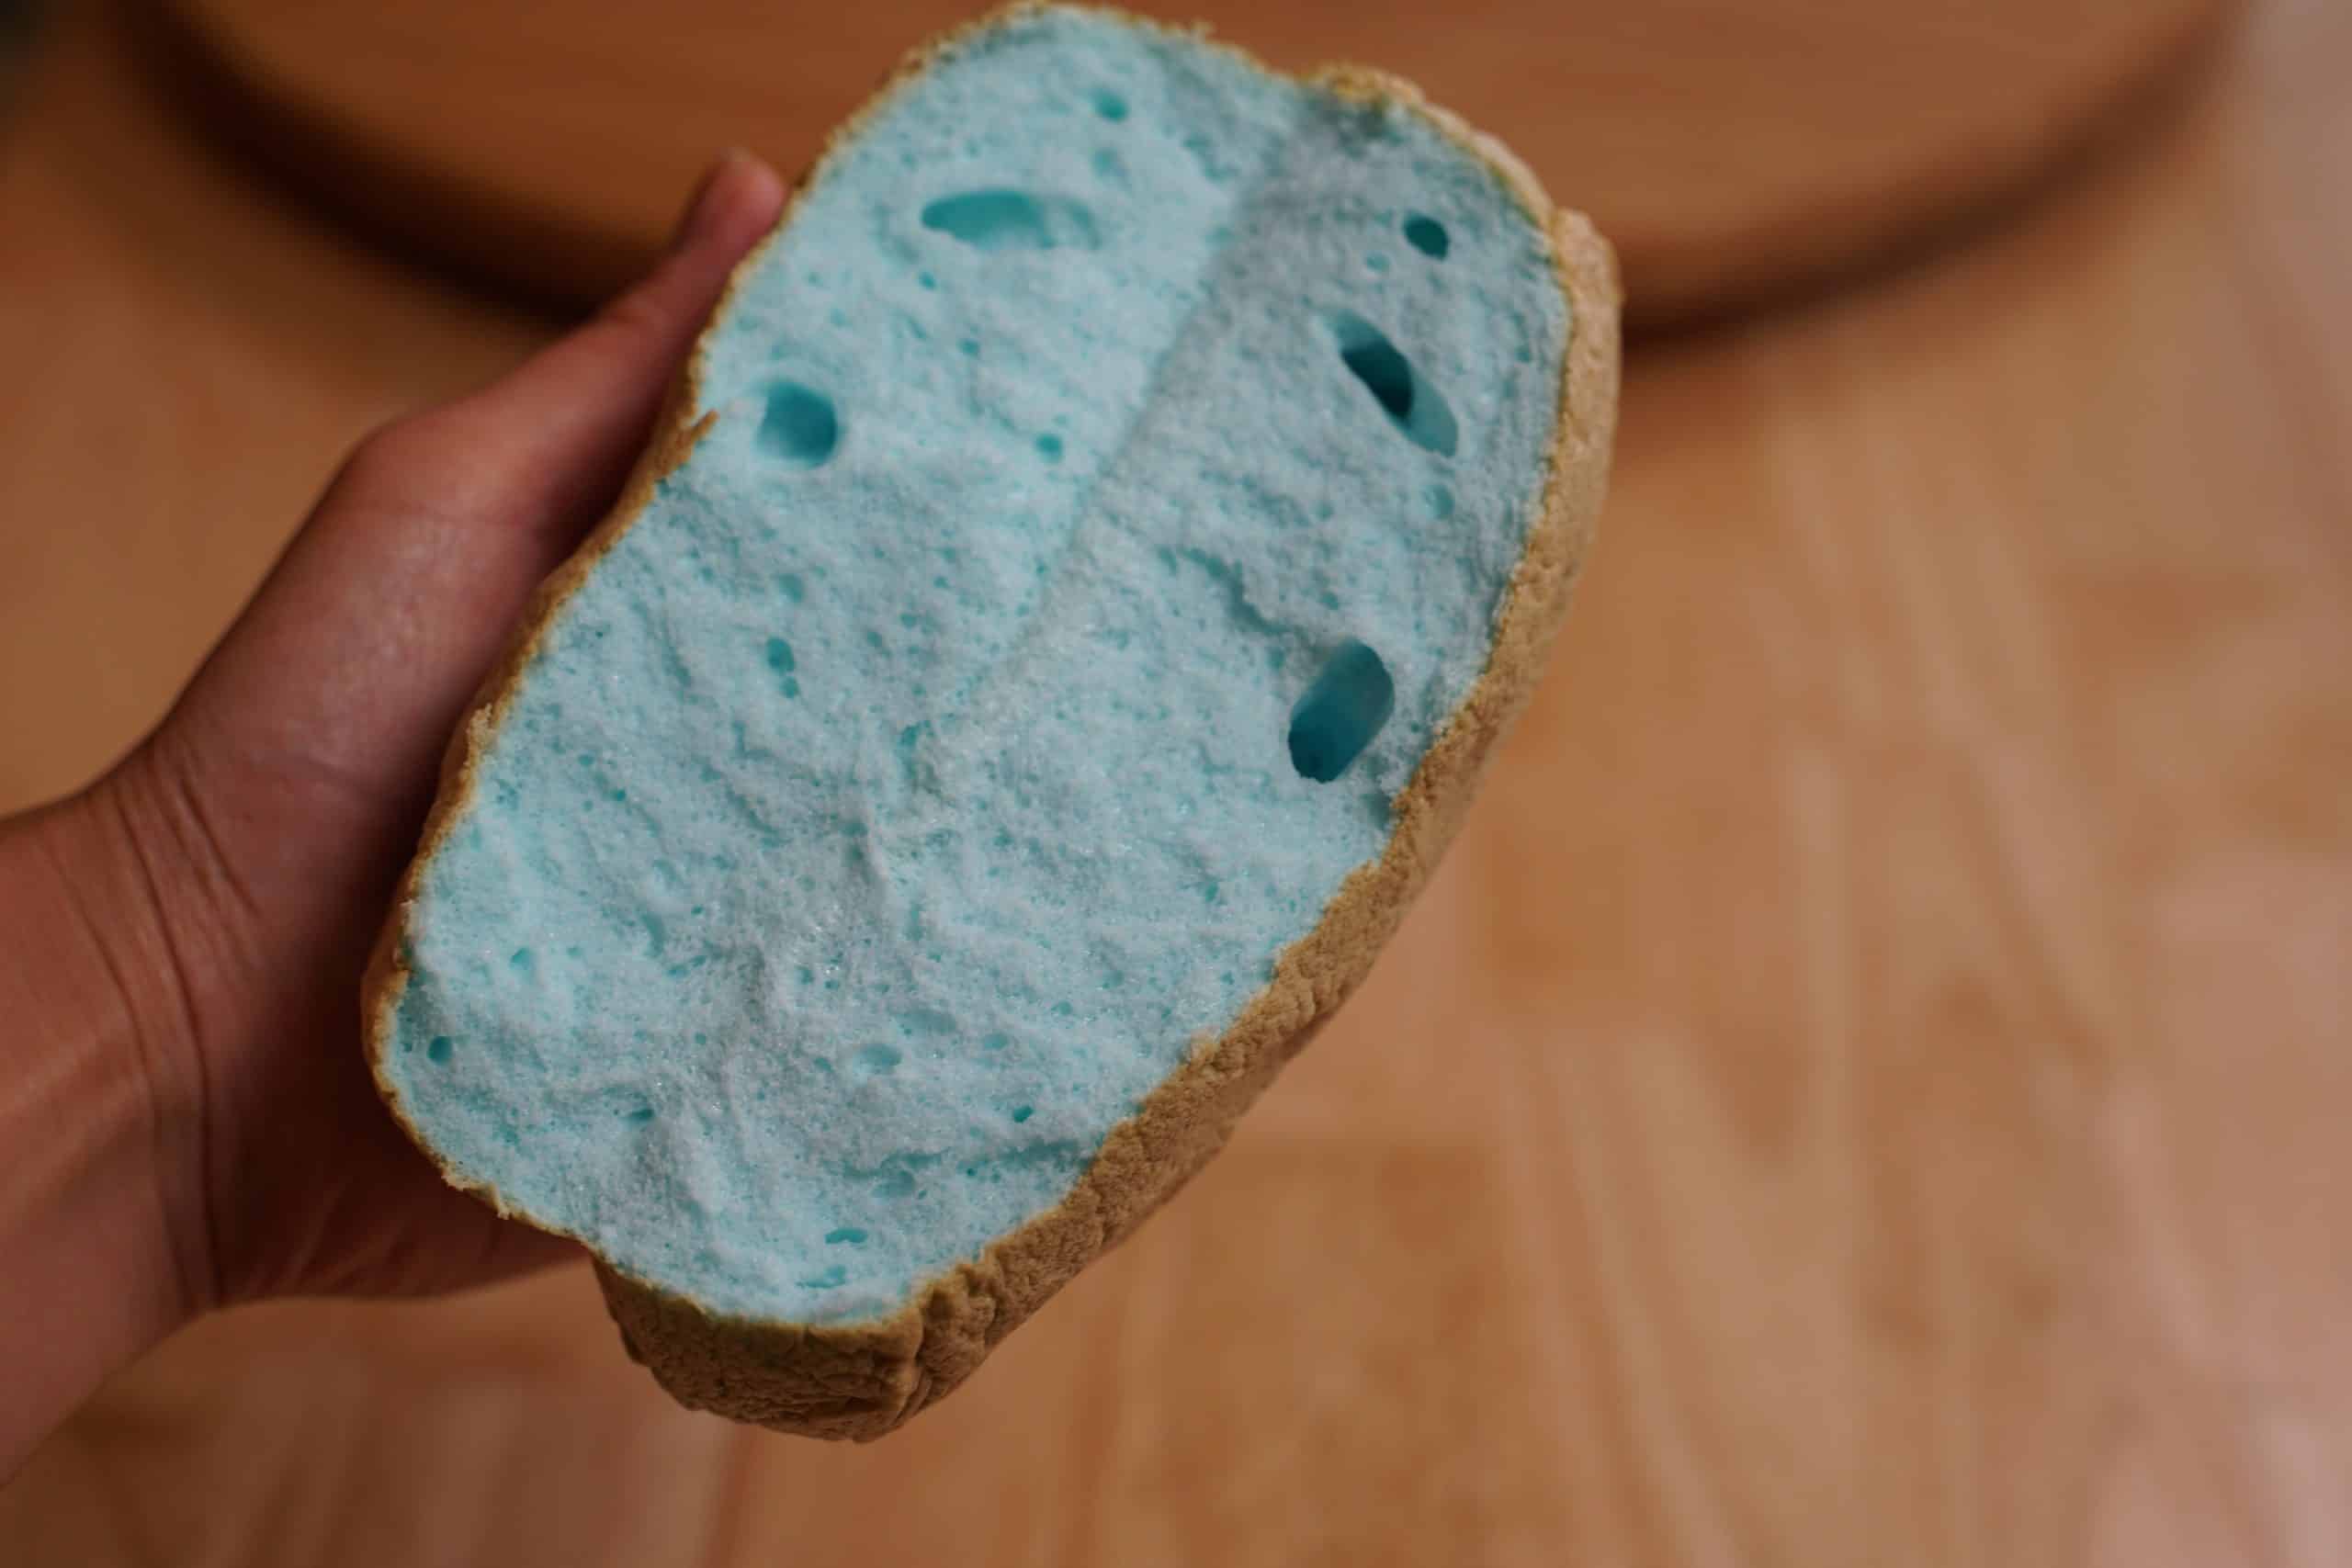 Fluffy light interior of blue cloud bread.